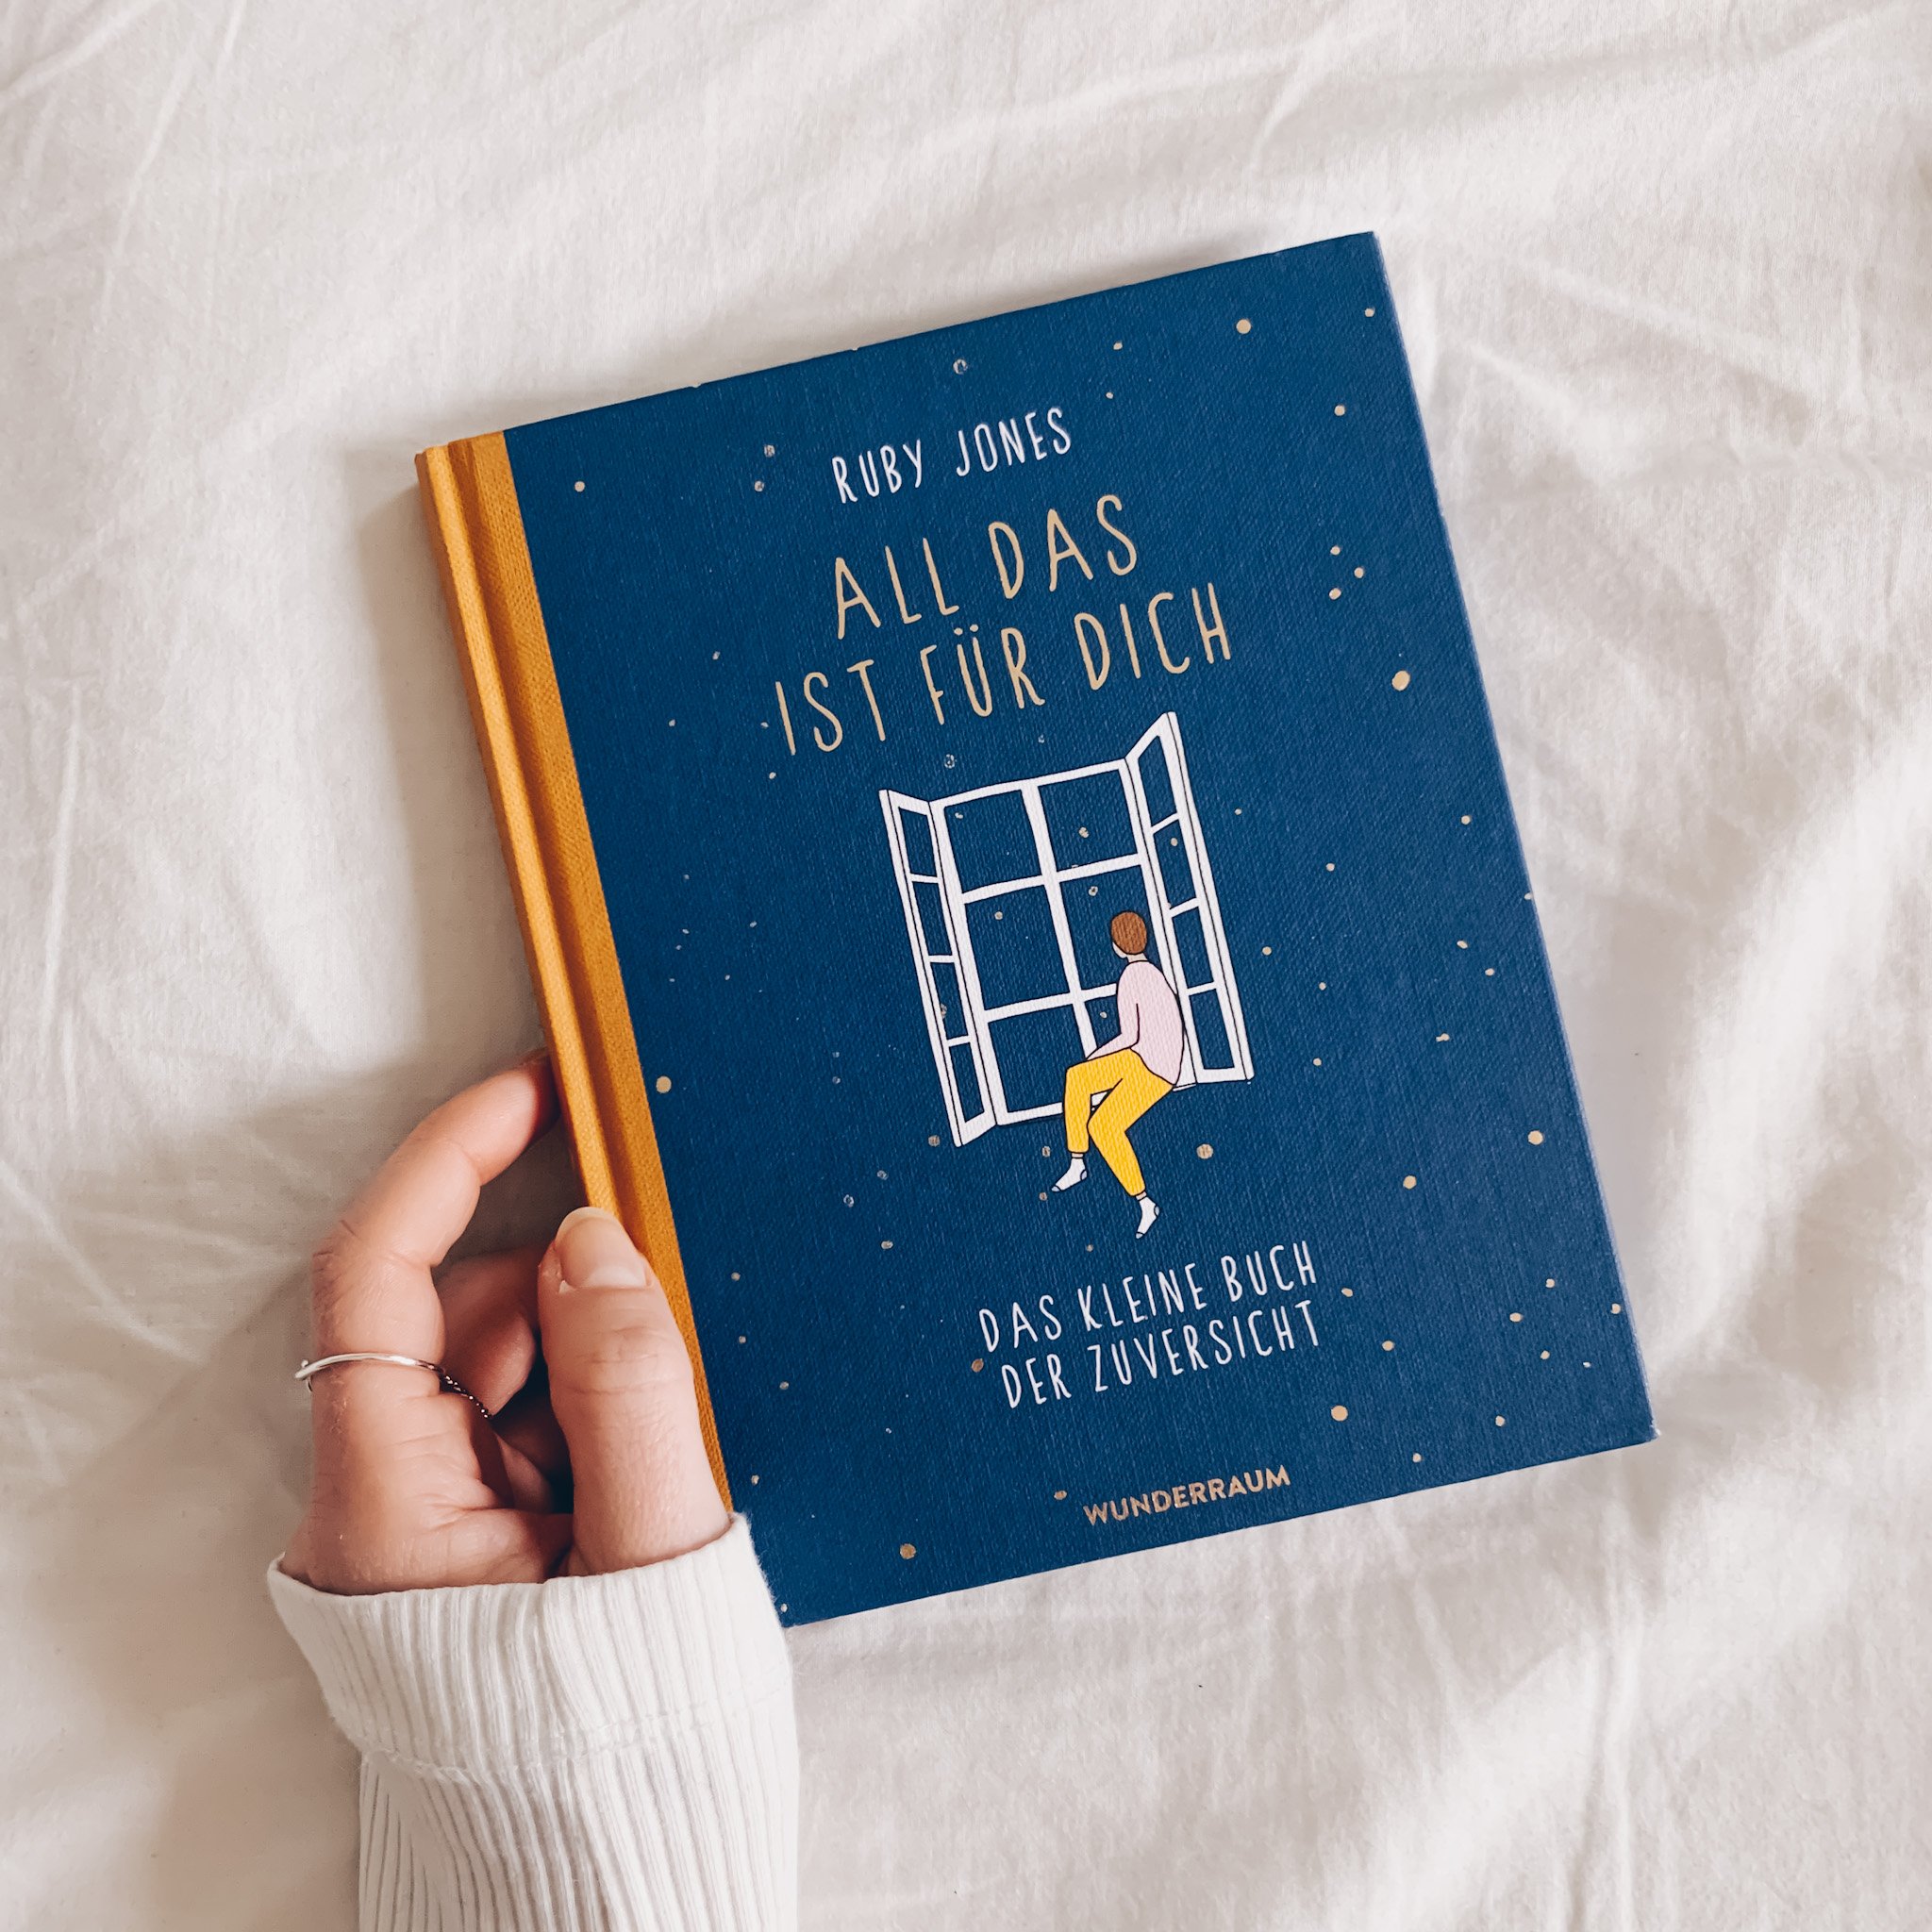 Buchtipp: "All das ist für dich: Das kleine Buch der Zuversicht" von Ruby Jones - Ein tolles Geschenk an dich selbst! Die liebevollen Illustrationen und Texte gehen direkt ins Herz und schenken dir Momente der Freude und Leichtigkeit in stressigen Zeiten. #stillundstark